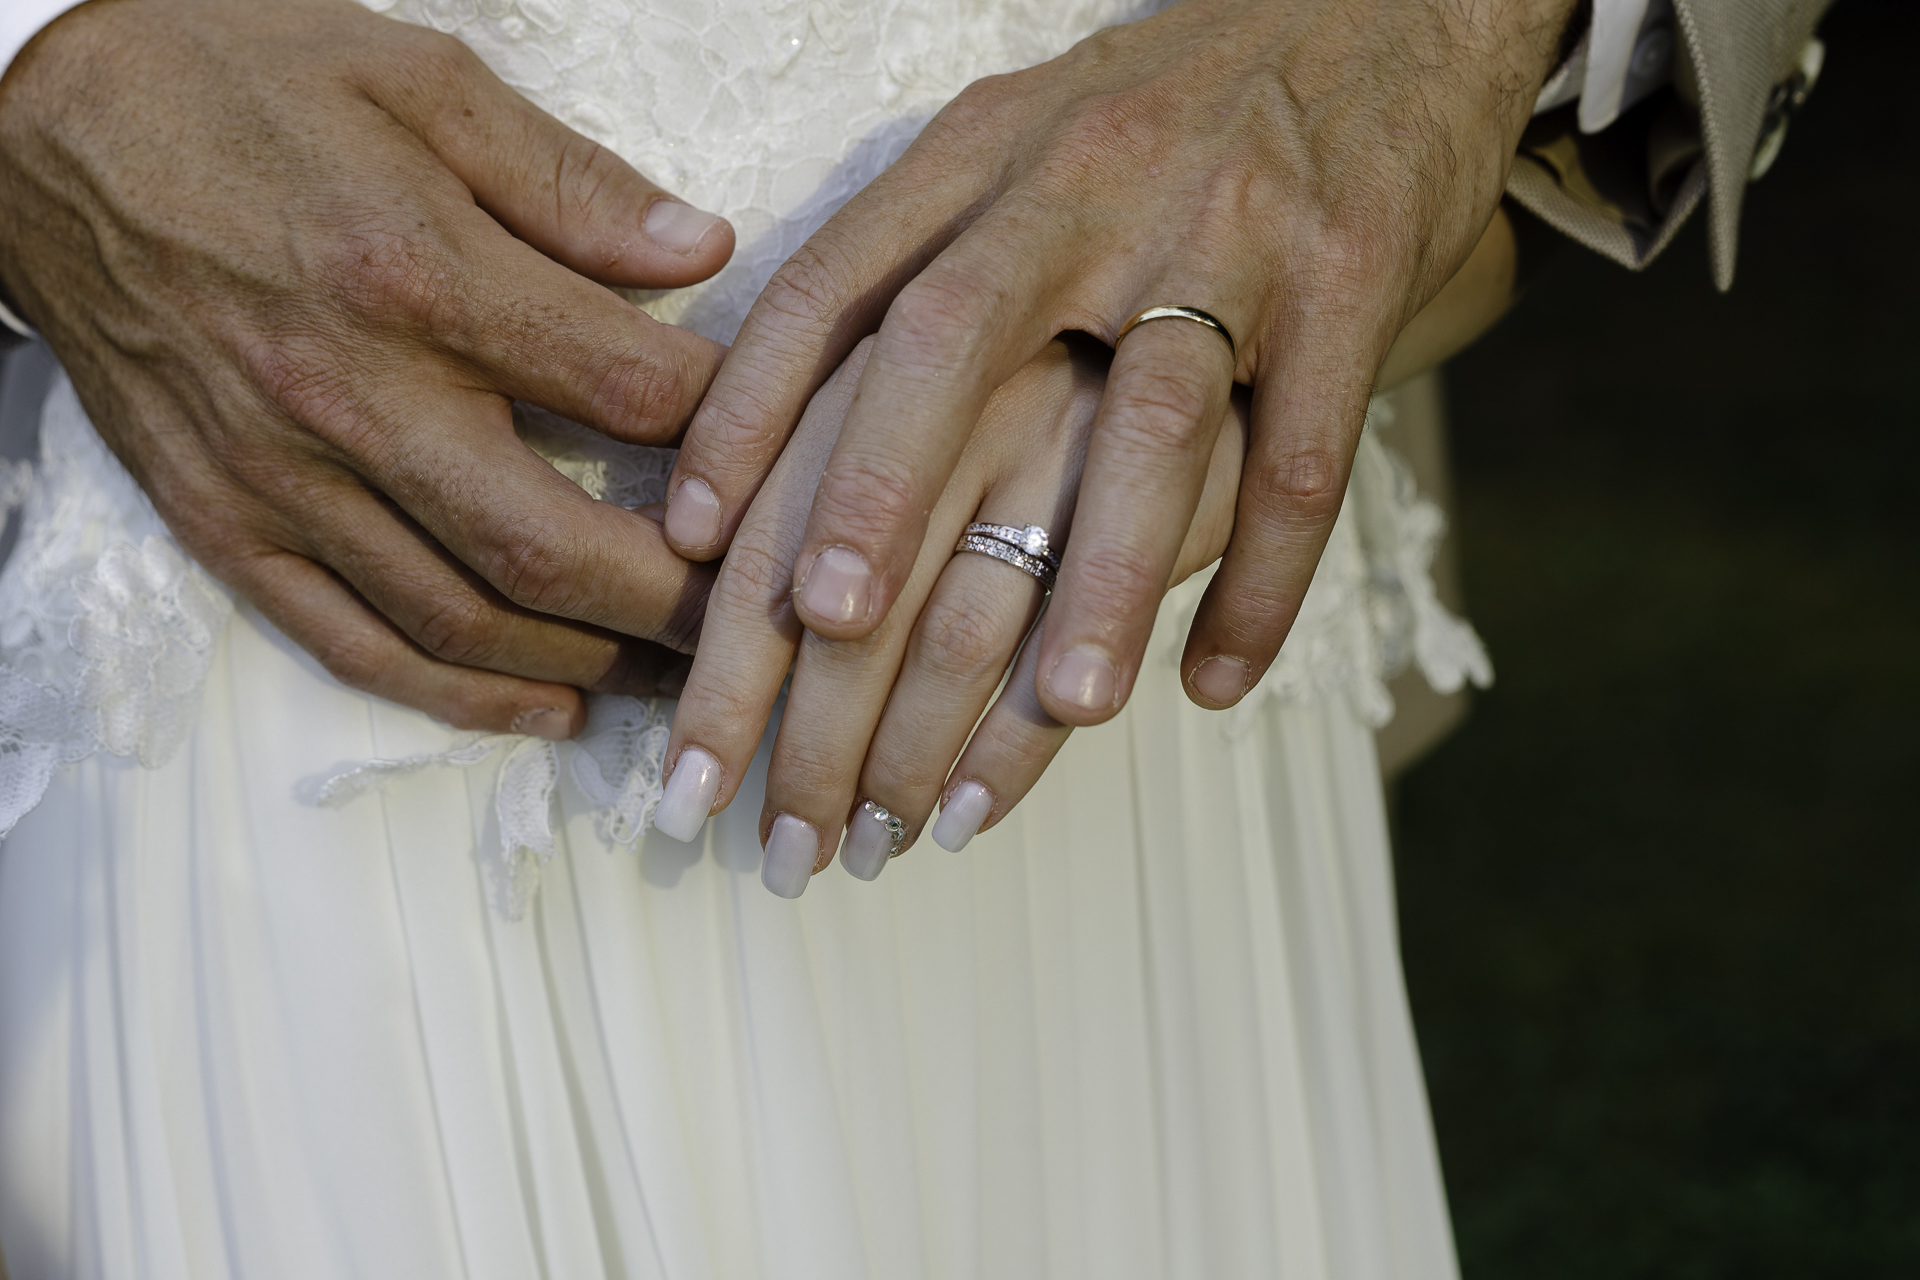 Deux mains se touchent, montrant leurs alliances fraîchement installées à leur doigts. En fond, la robe de la mariée indique que cette photo a été prise lors du mariage.